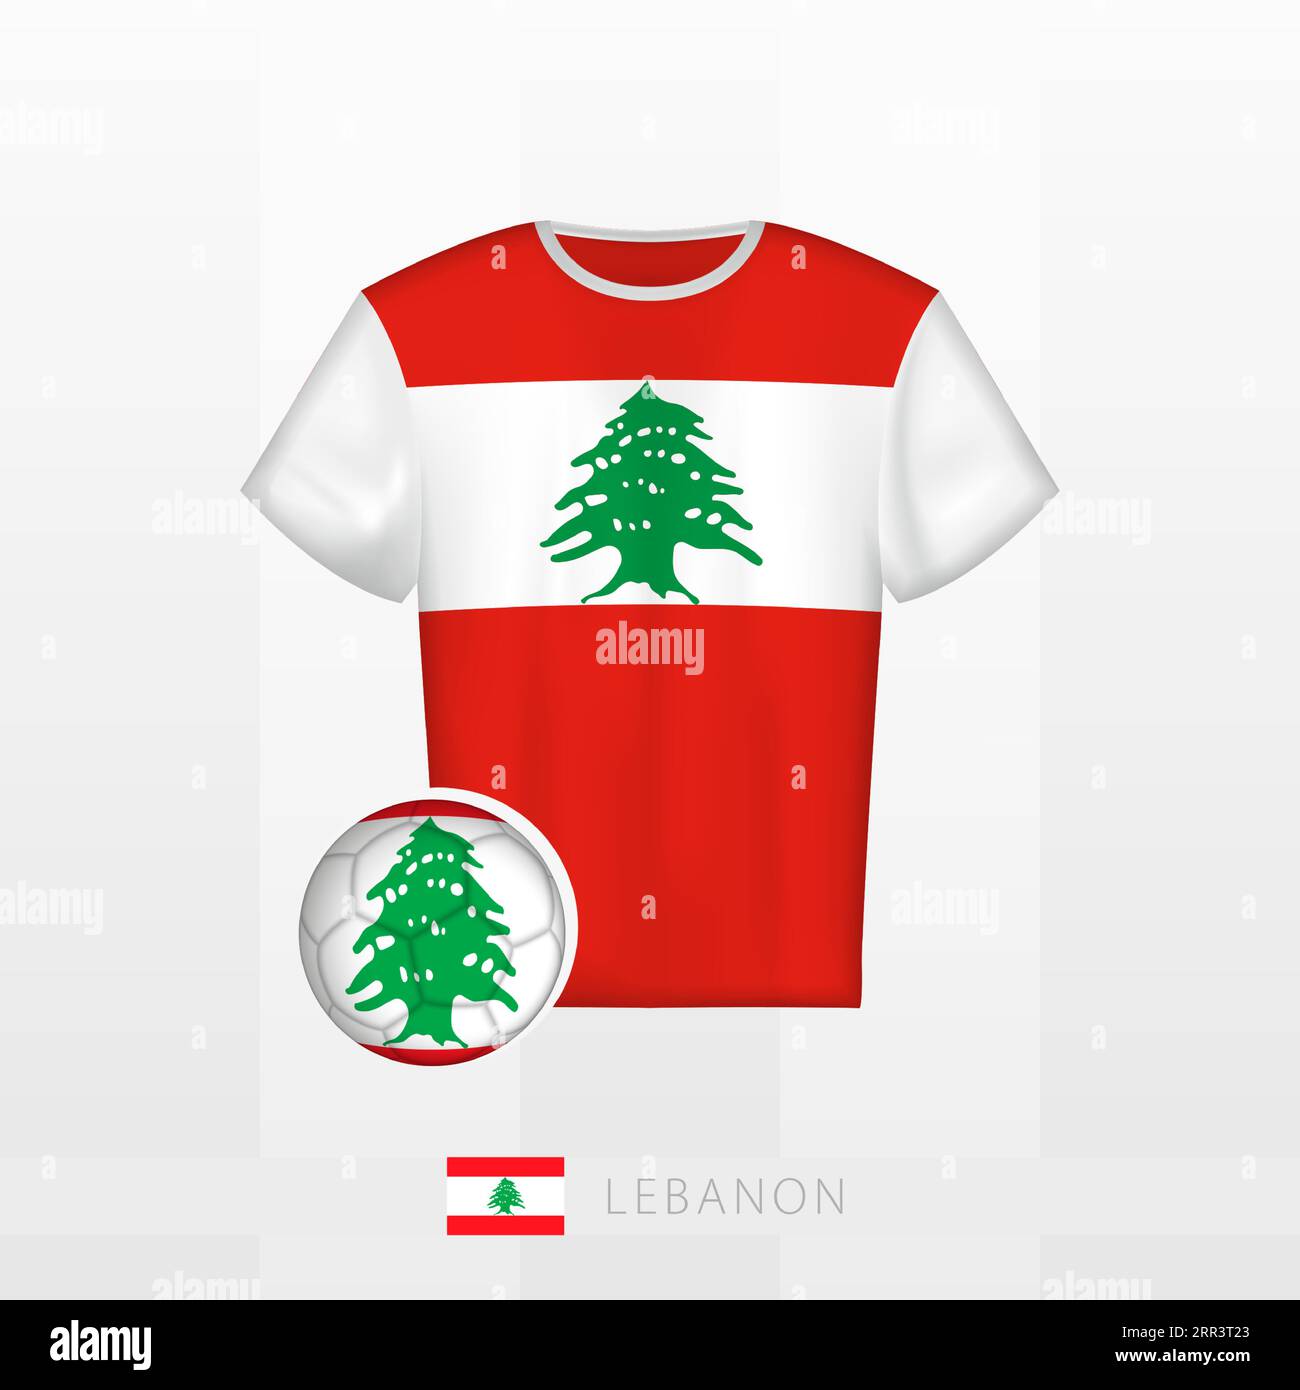 Uniforme de football de l'équipe nationale du Liban avec ballon de football avec drapeau du Liban. Maillot de football et ballon de soccerball avec drapeau. Modèle vectoriel. Illustration de Vecteur